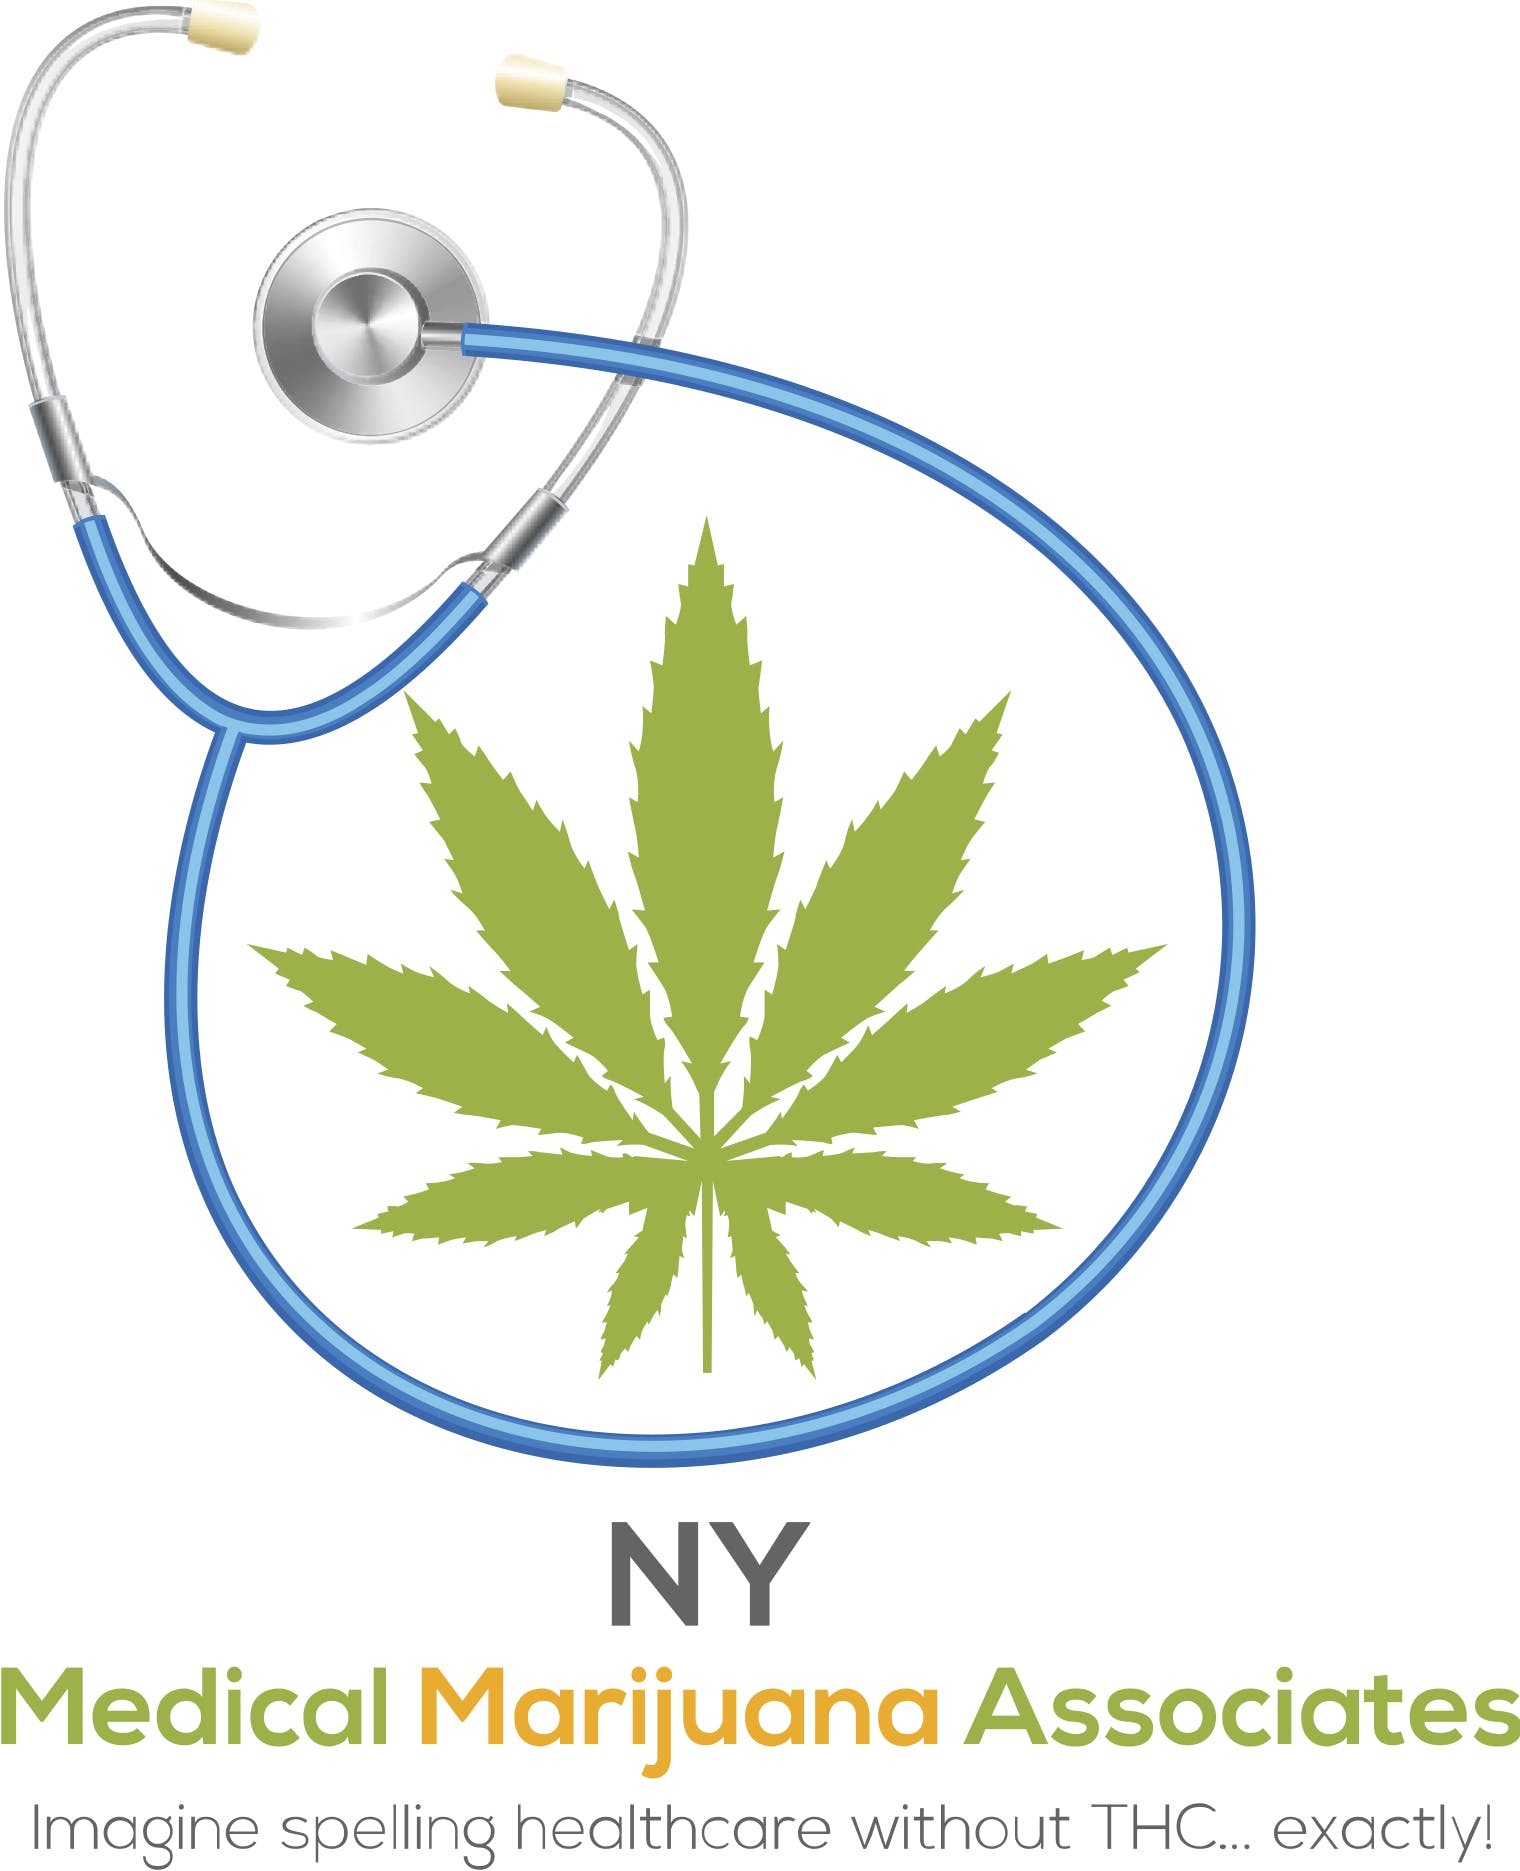 NY Medical Marijuana Associates - Medical Marijuana Doctors - Cannabizme.com